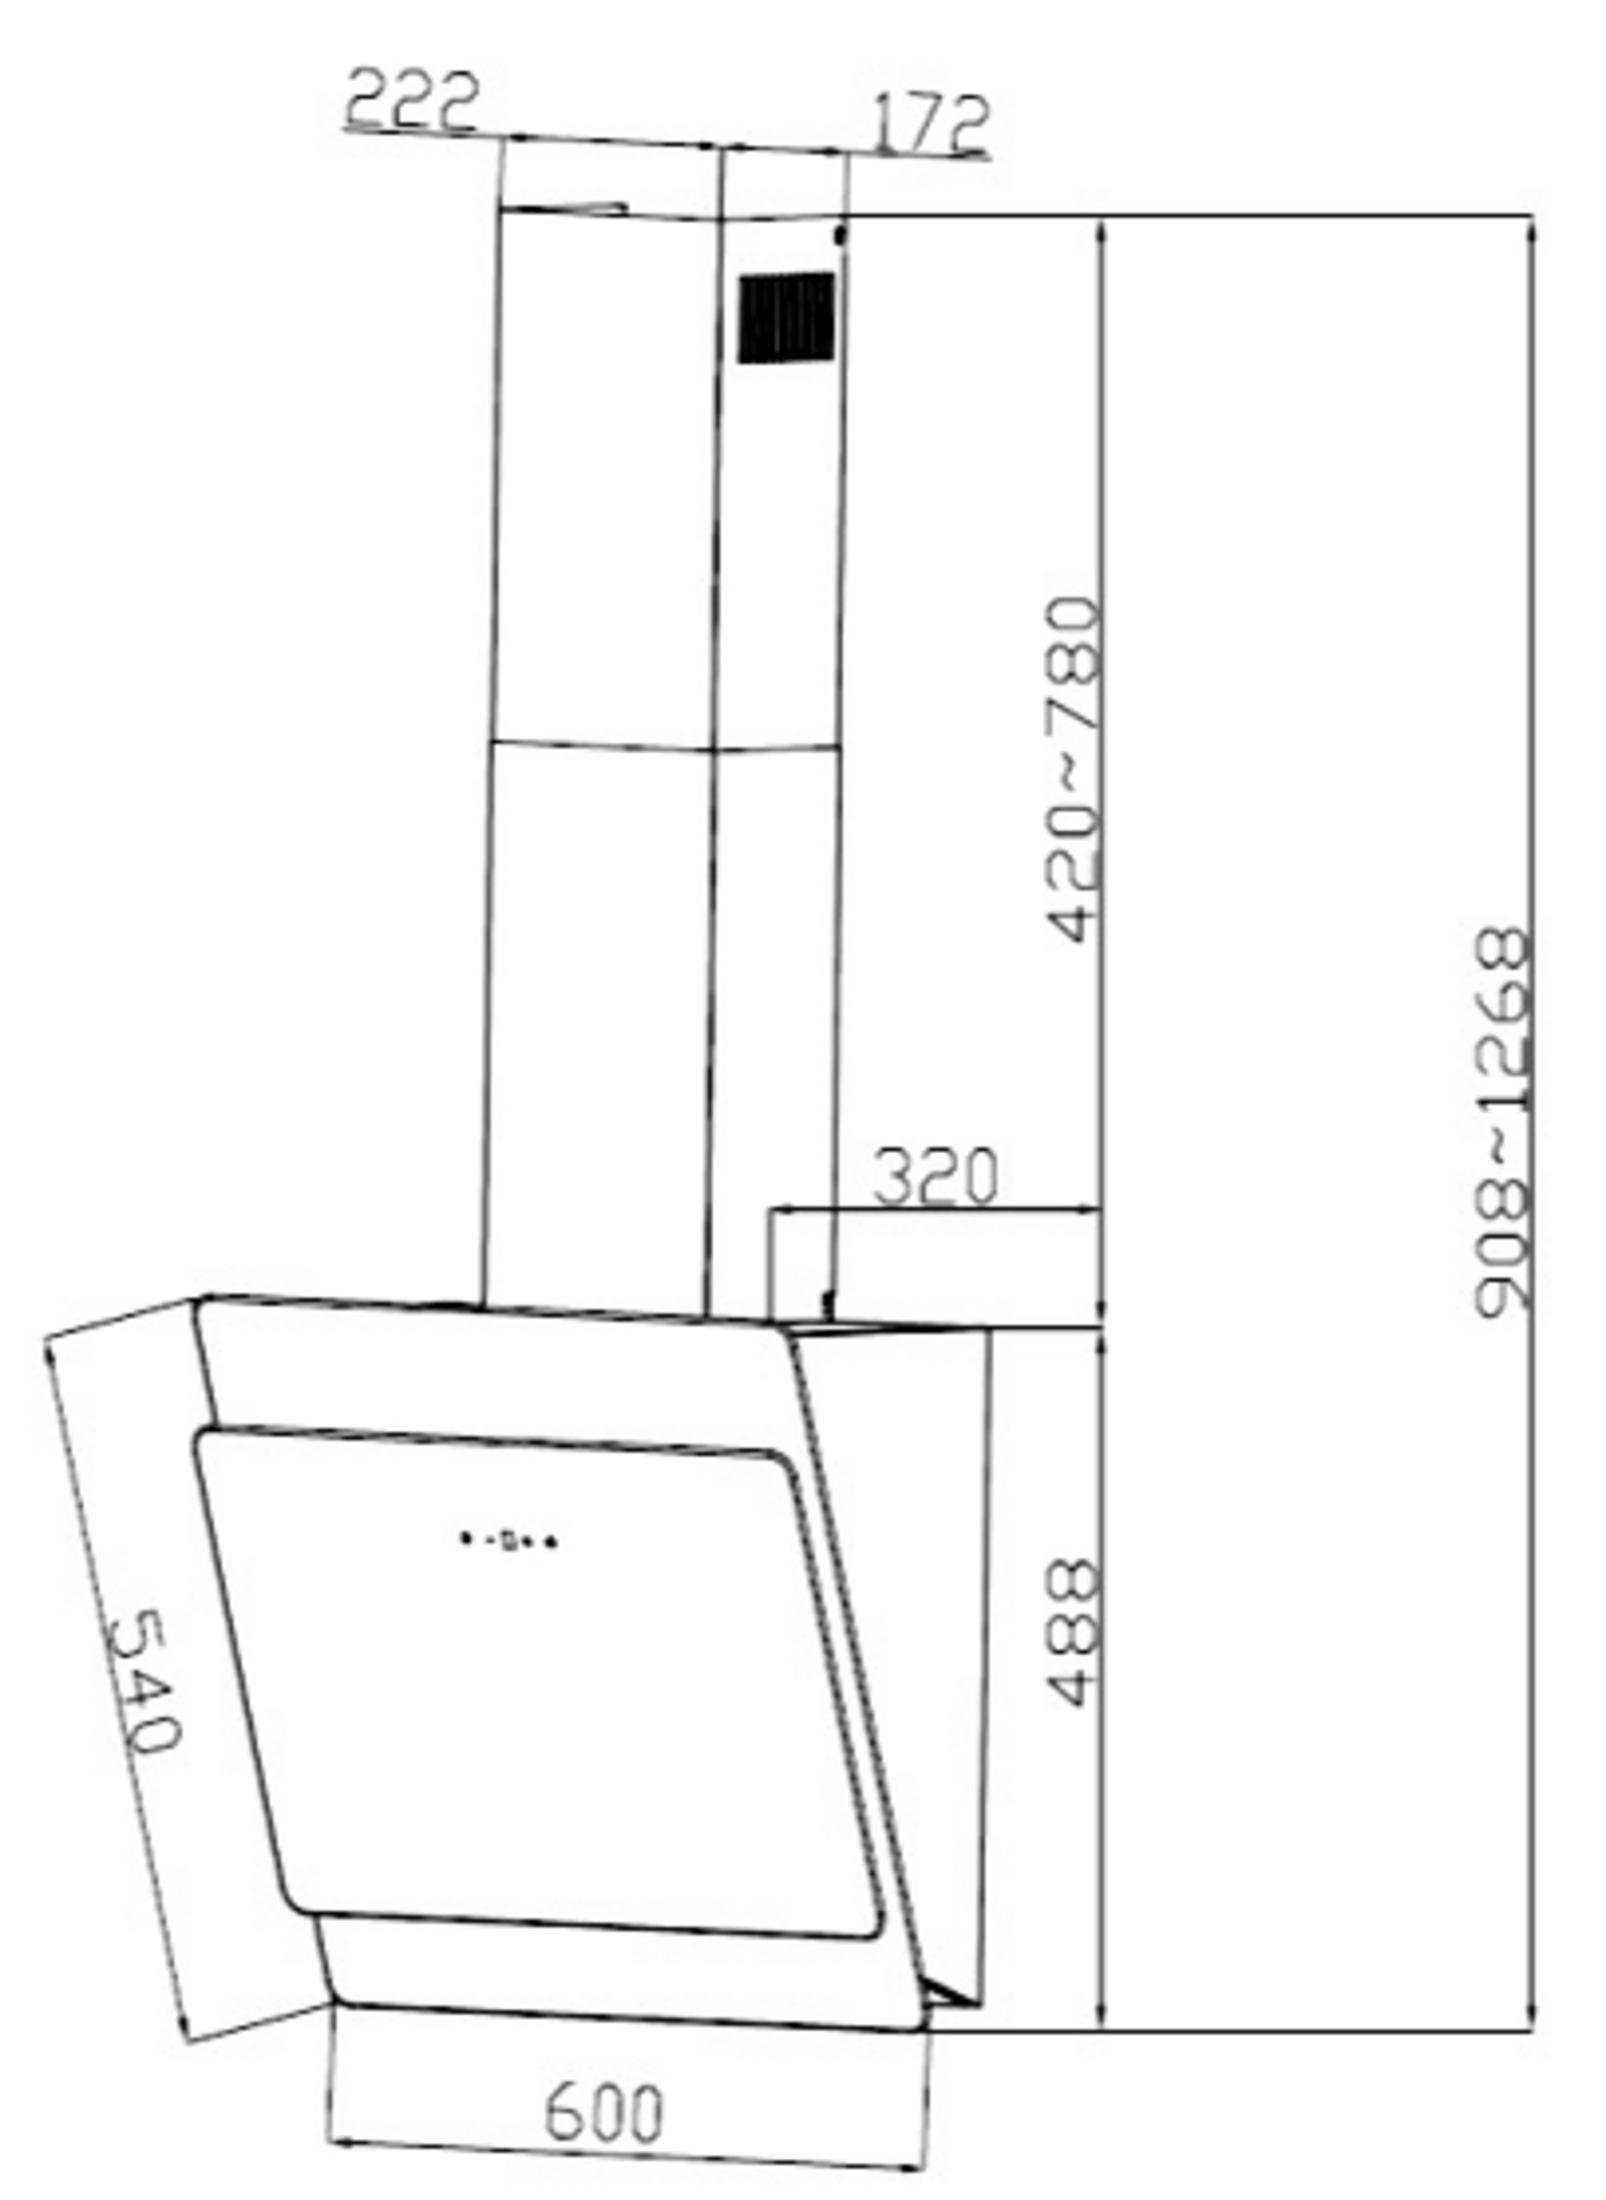 Dunstabzugshaube S3-60 tief) (600 mm PKM mm breit, ABTZ, 320